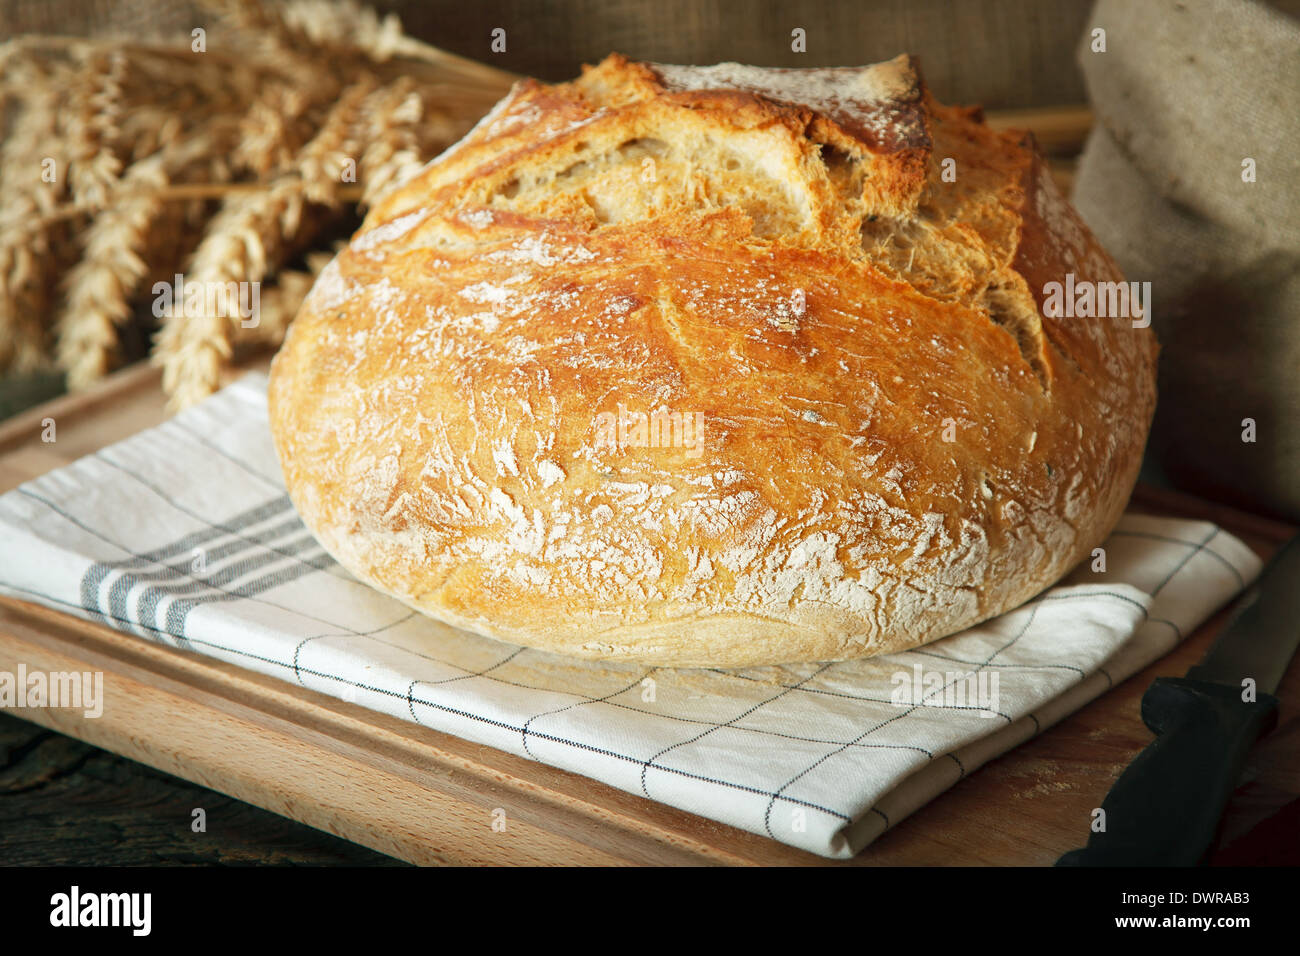 Du pain fait maison sur table en bois Banque D'Images